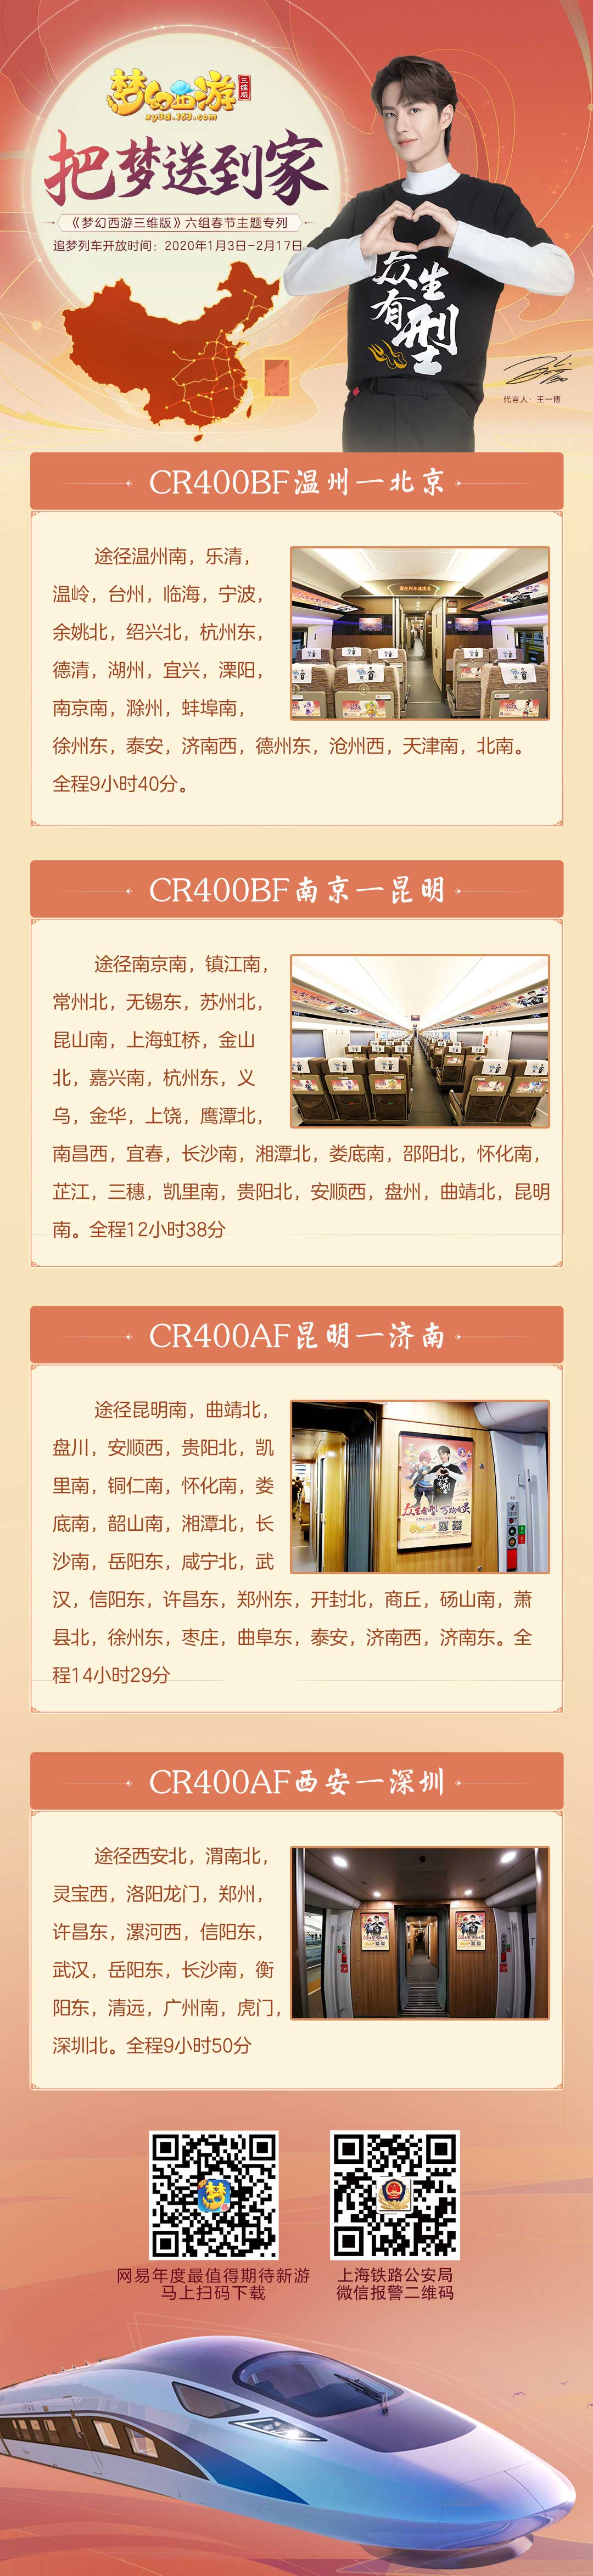 《梦幻西游三维版》二十八星宿、春节玩法上线!